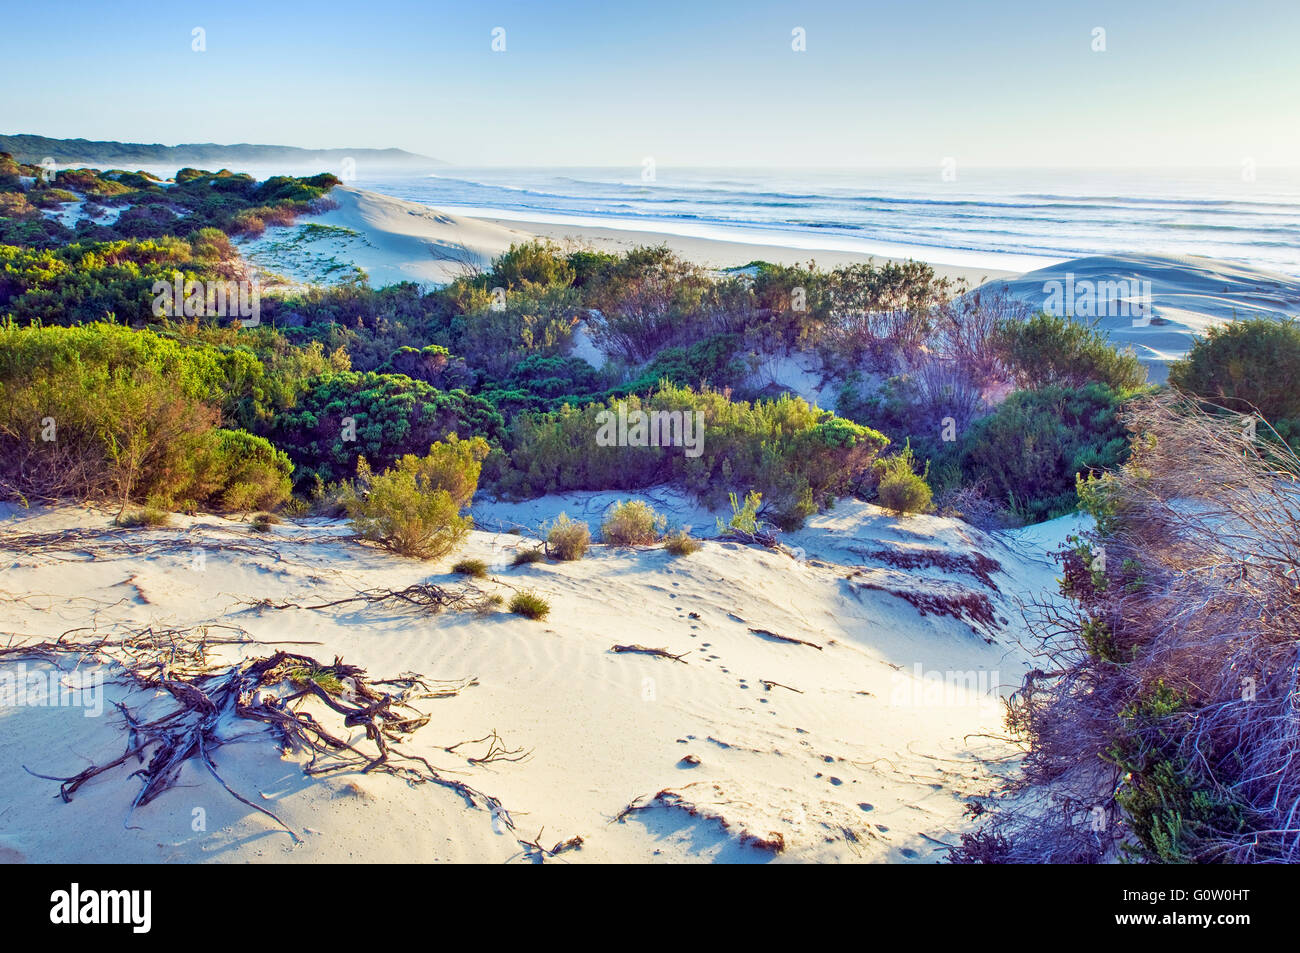 Une dune de sable et la végétation côtière de l'Eastern Cape Coast en Afrique du Sud Banque D'Images